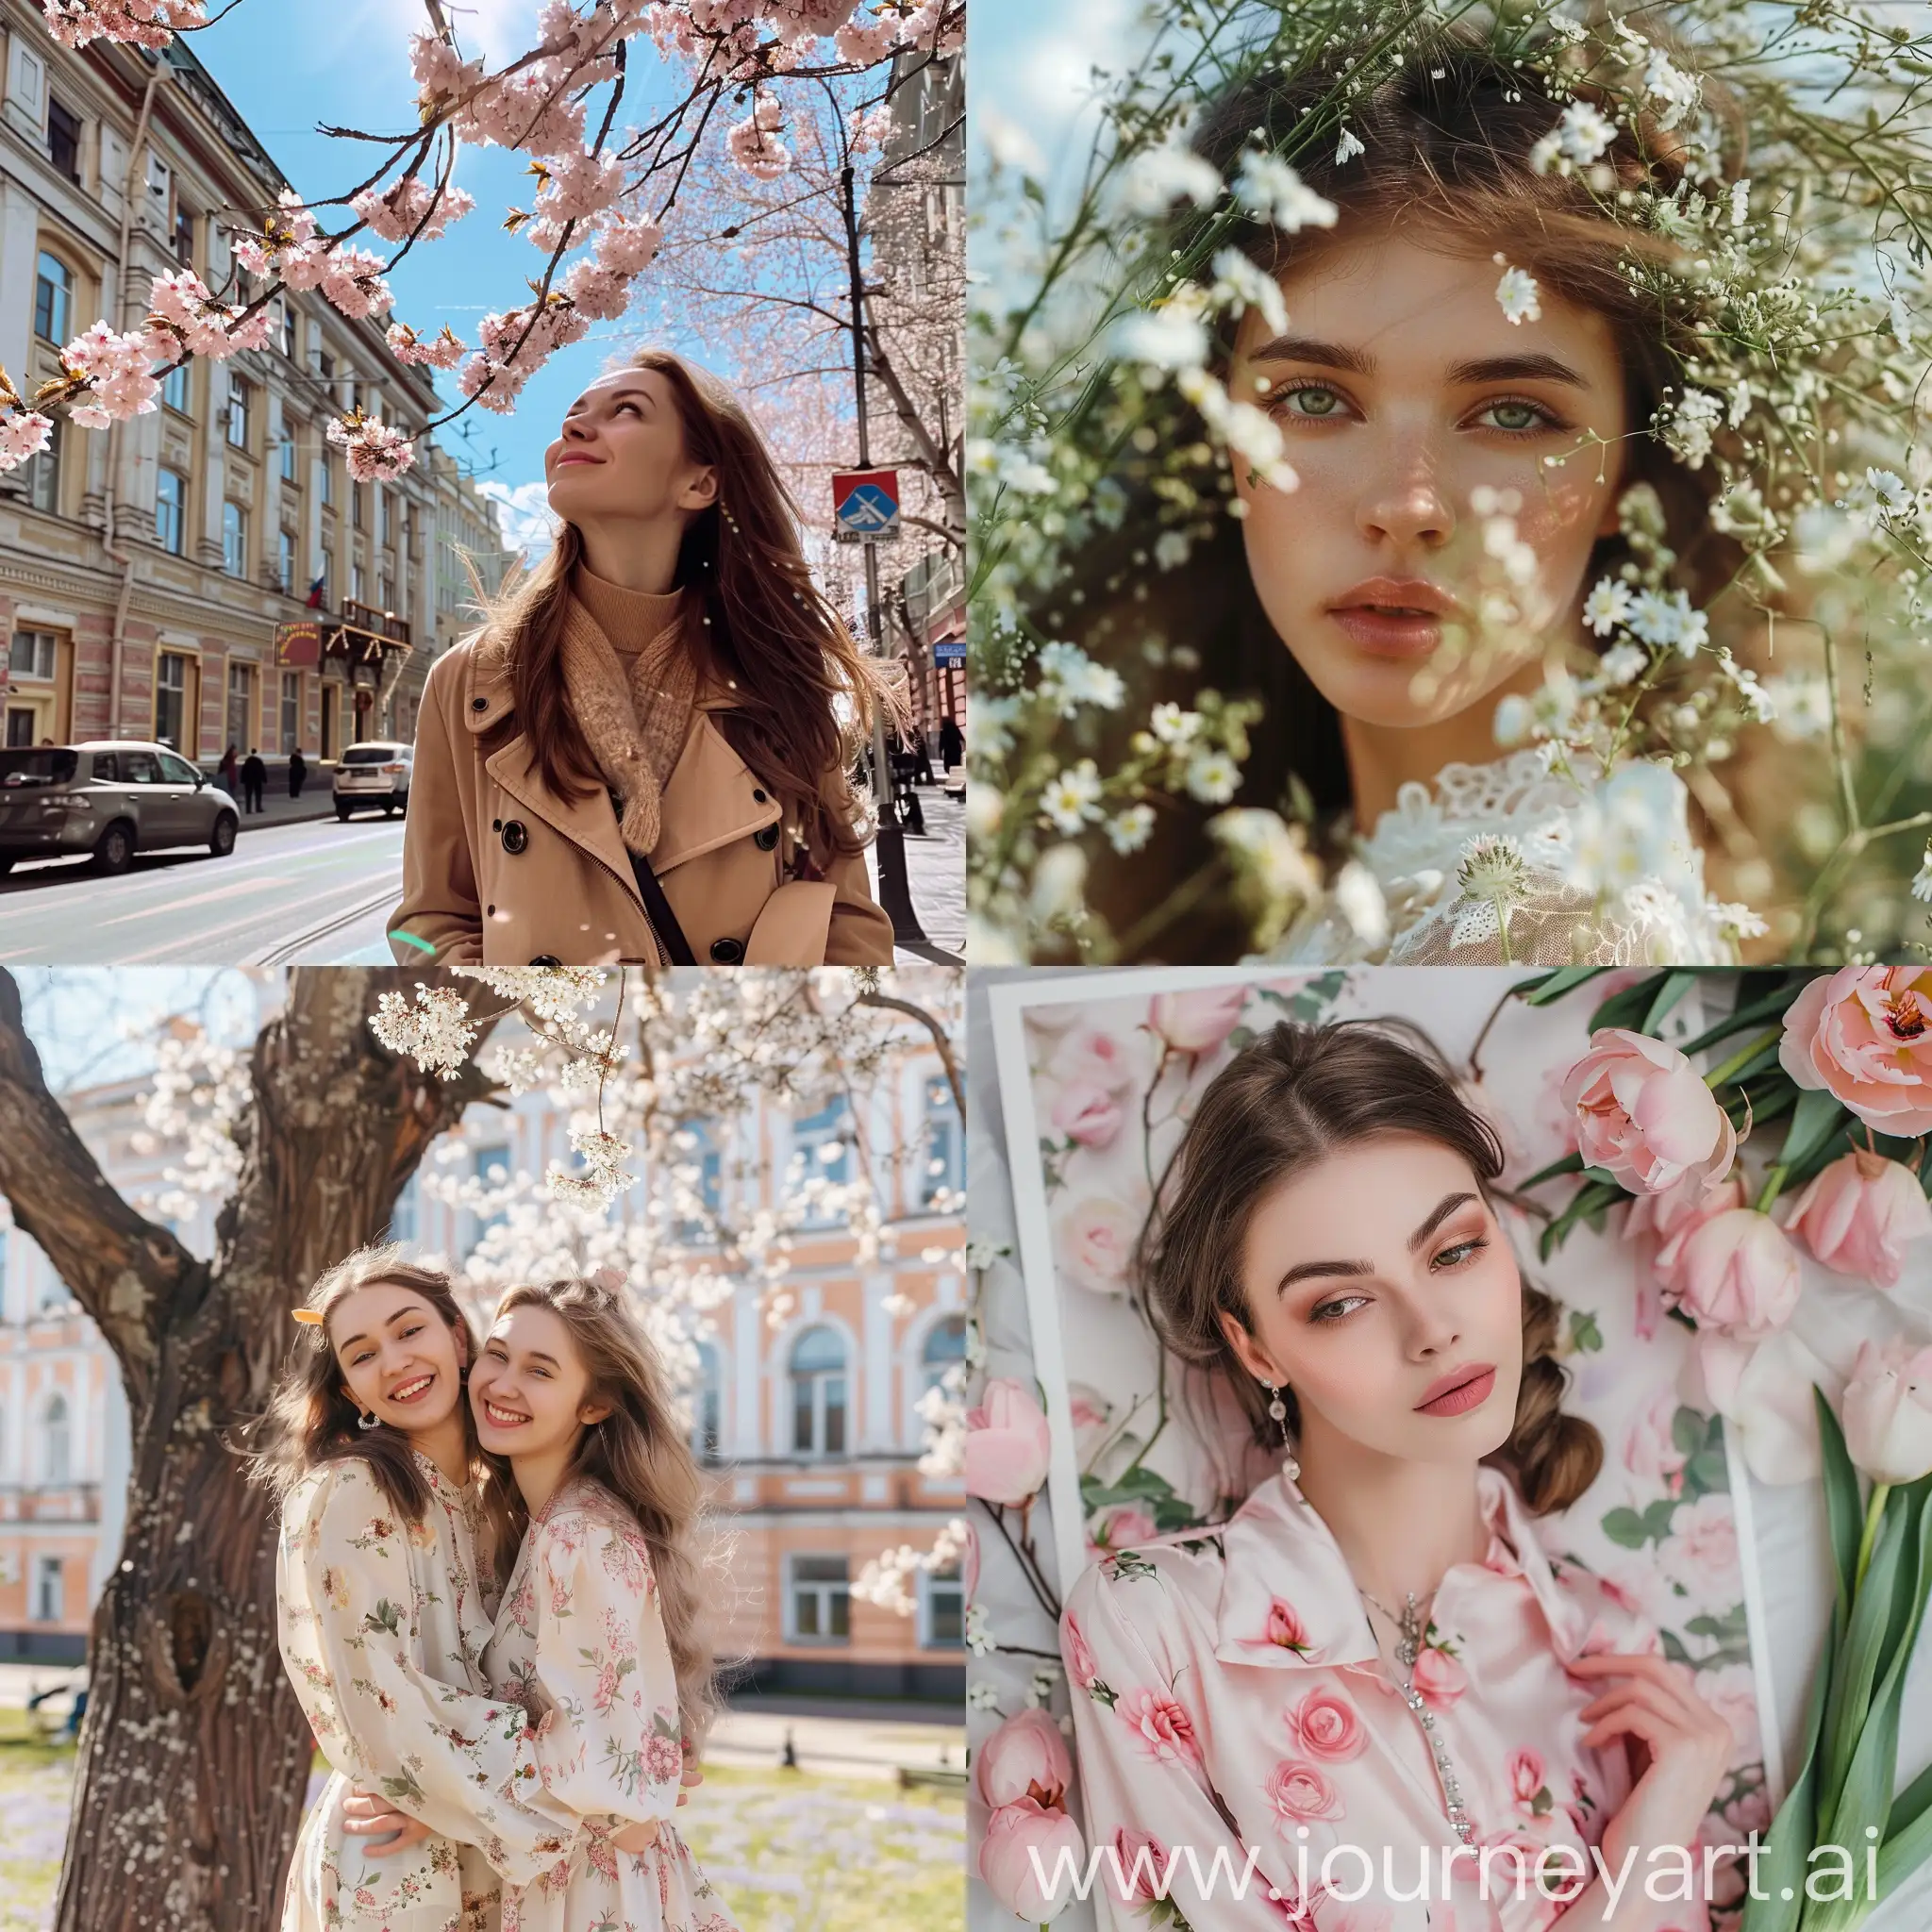 Russian-Women-Celebrating-Spring-Vibrant-Festive-Atmosphere